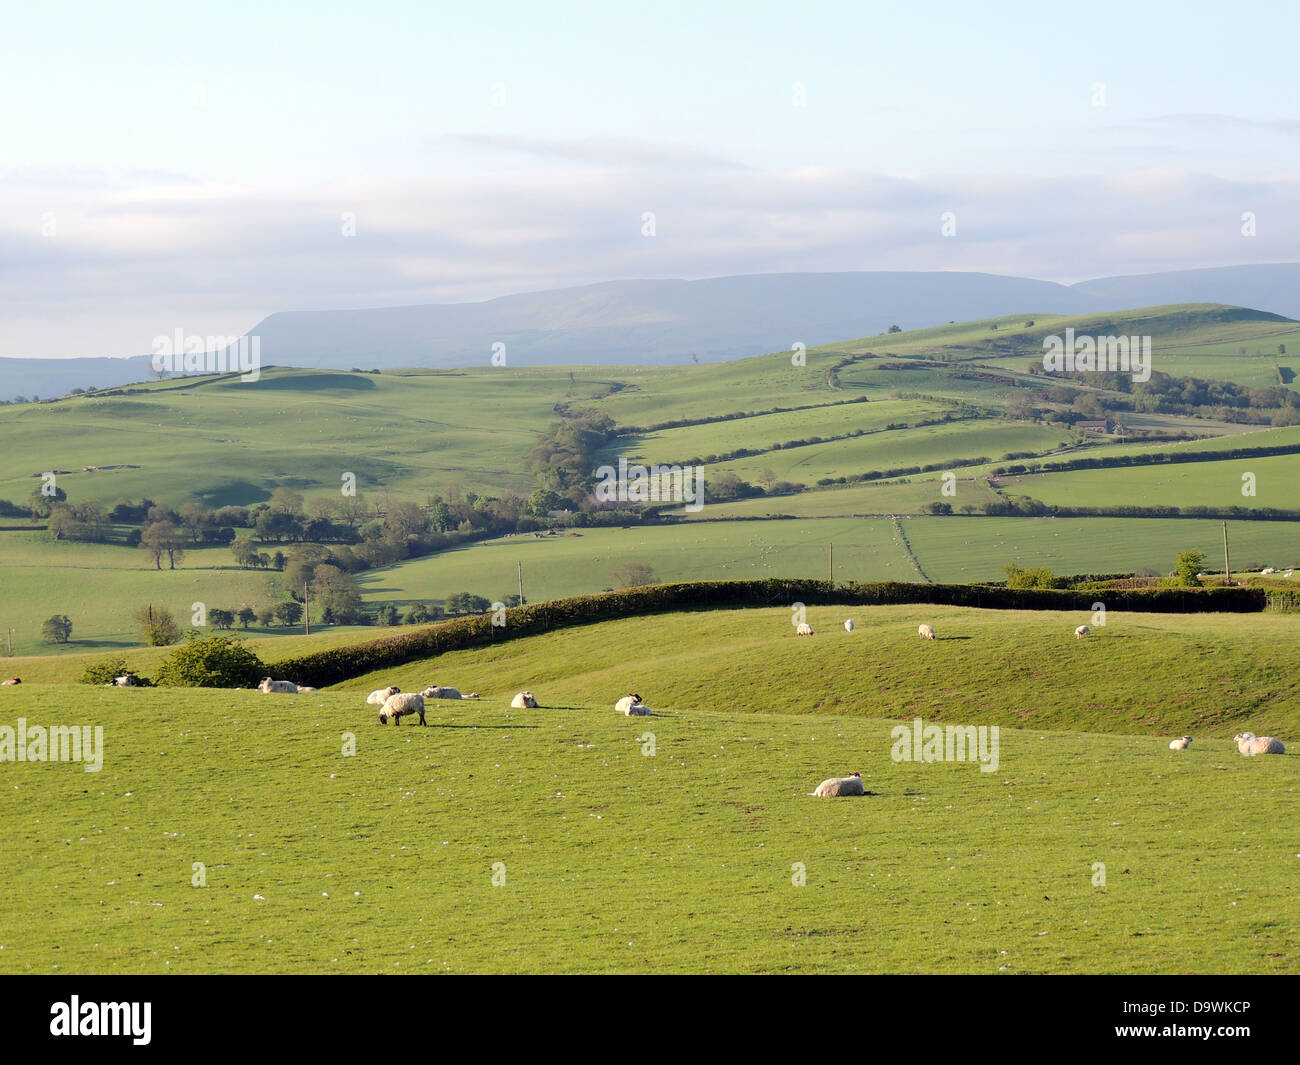 SHEEP FARM near Newchurch, Kington,Herefordshire, England. Photo Tony Gale Stock Photo